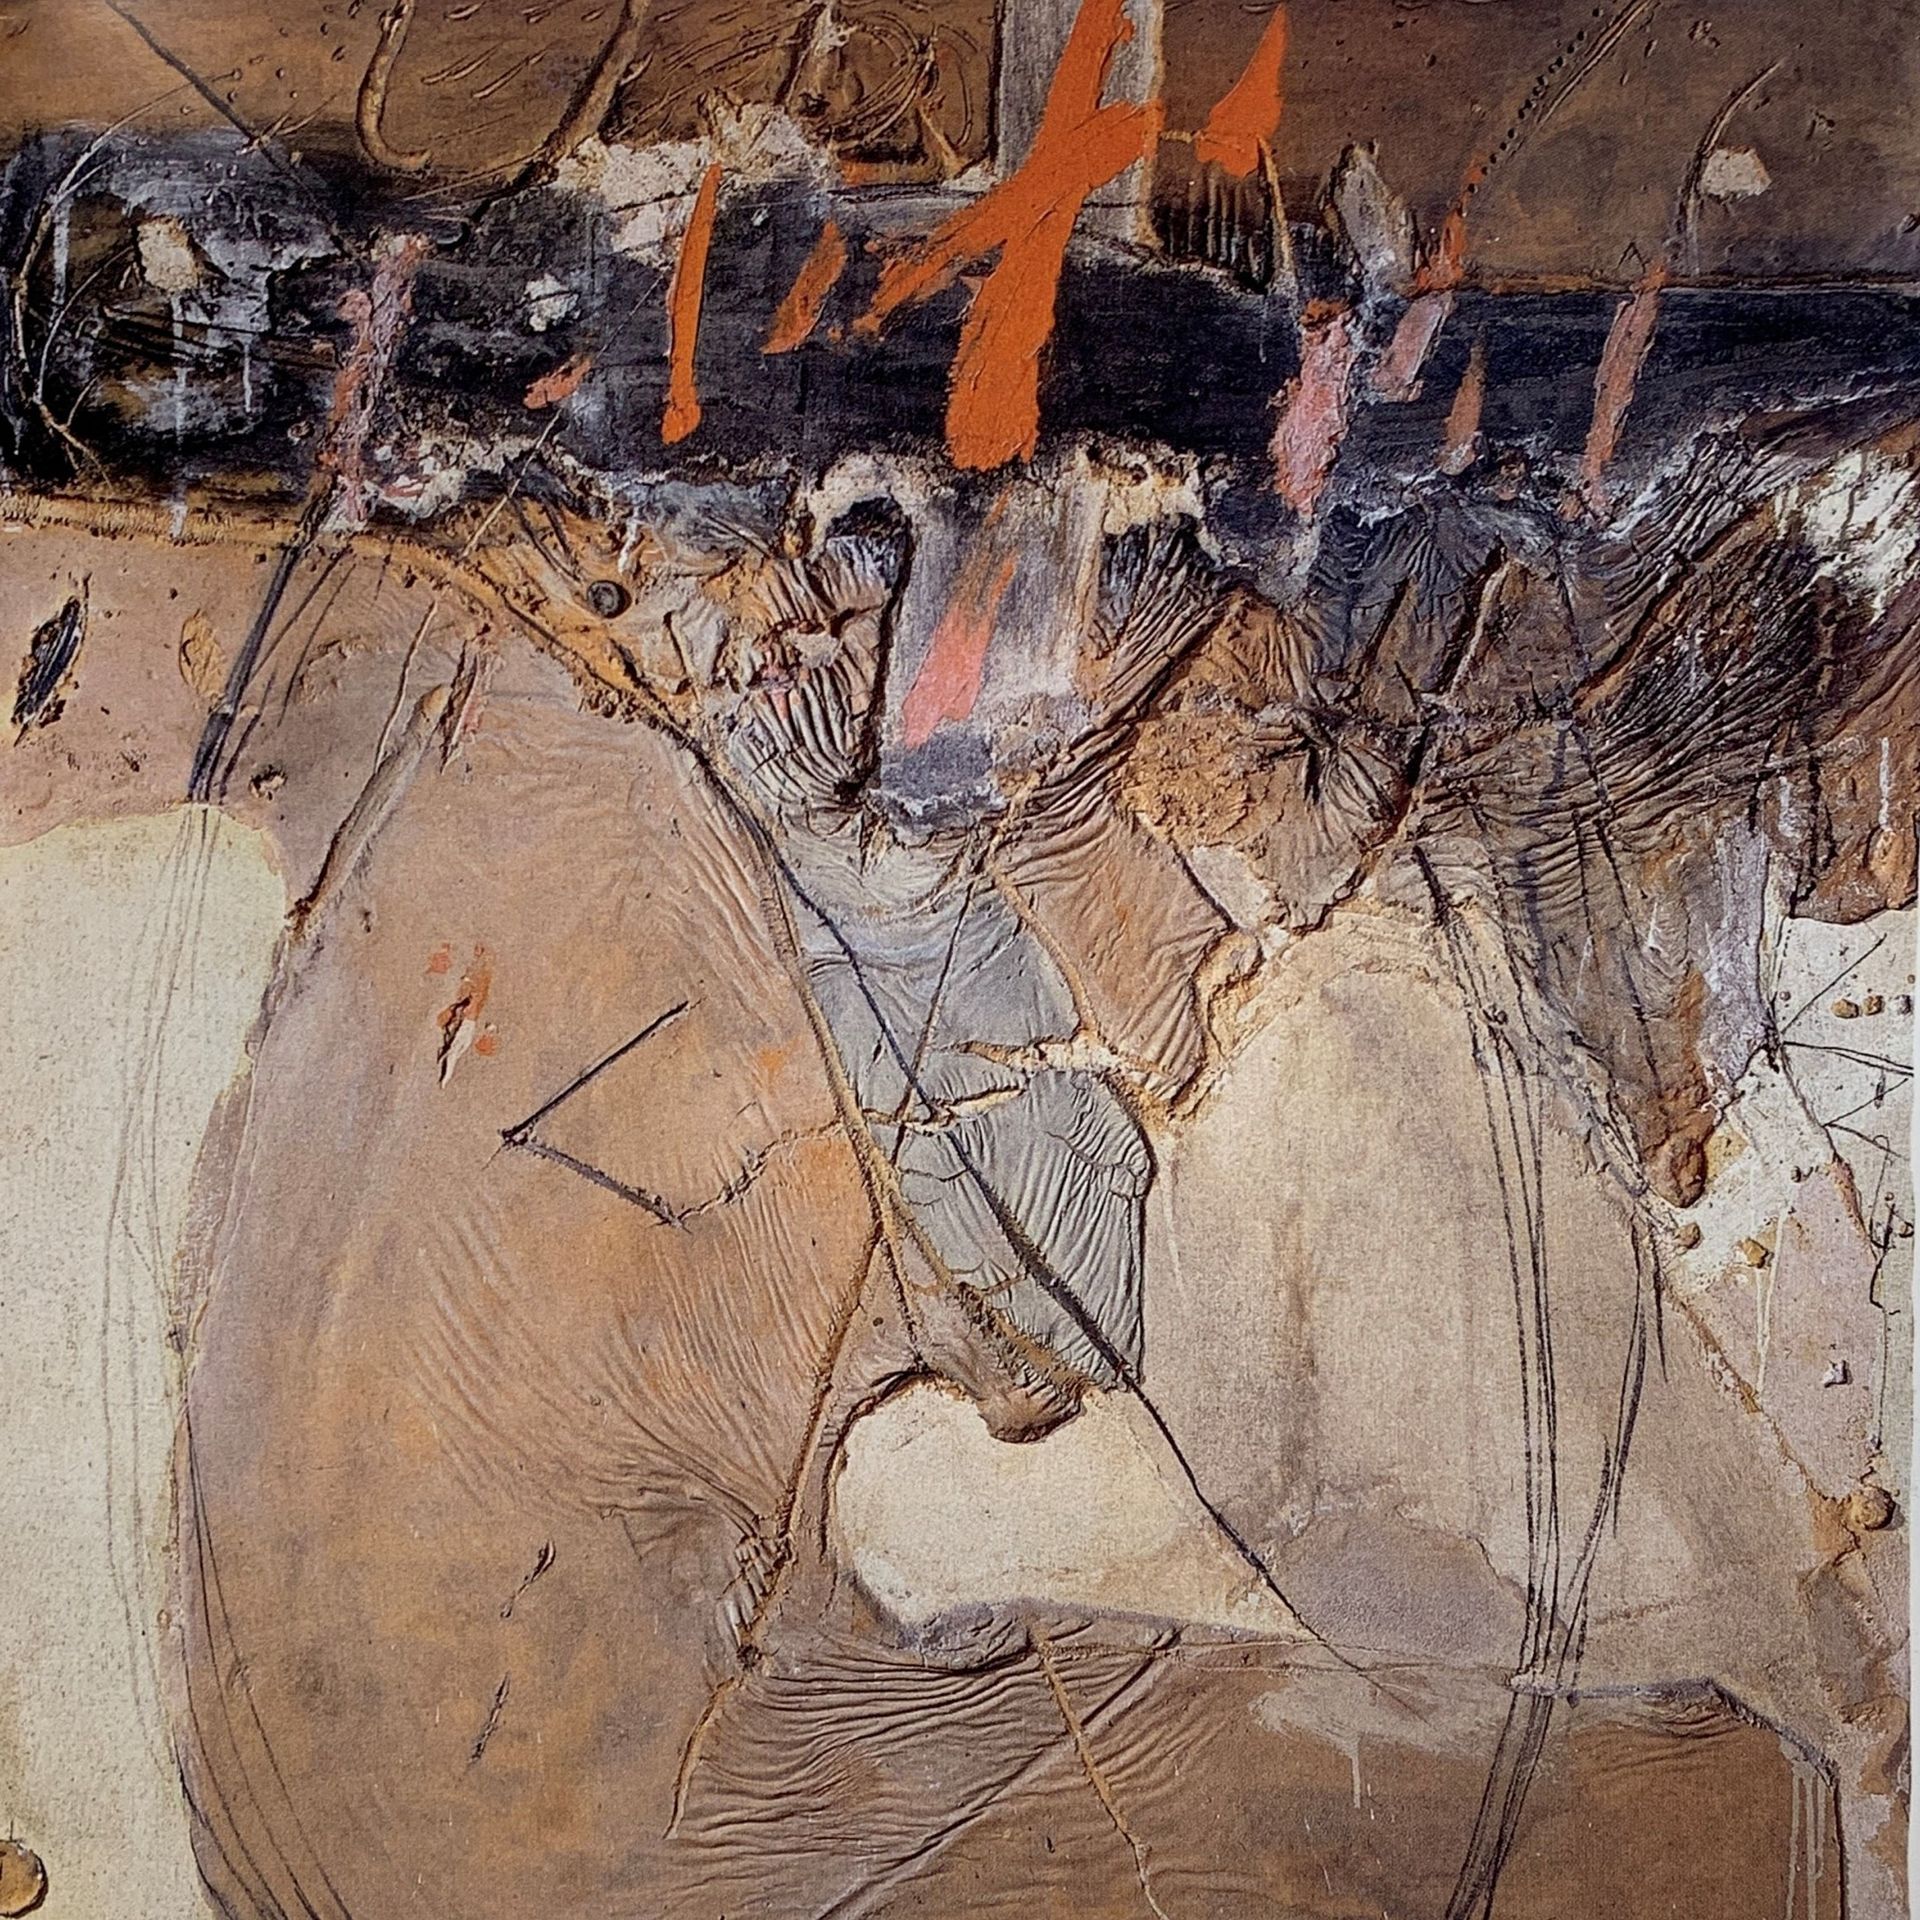 Antoni Tàpies, Cos de materia I taques taronges (corps de matière et taches oranges), 1968